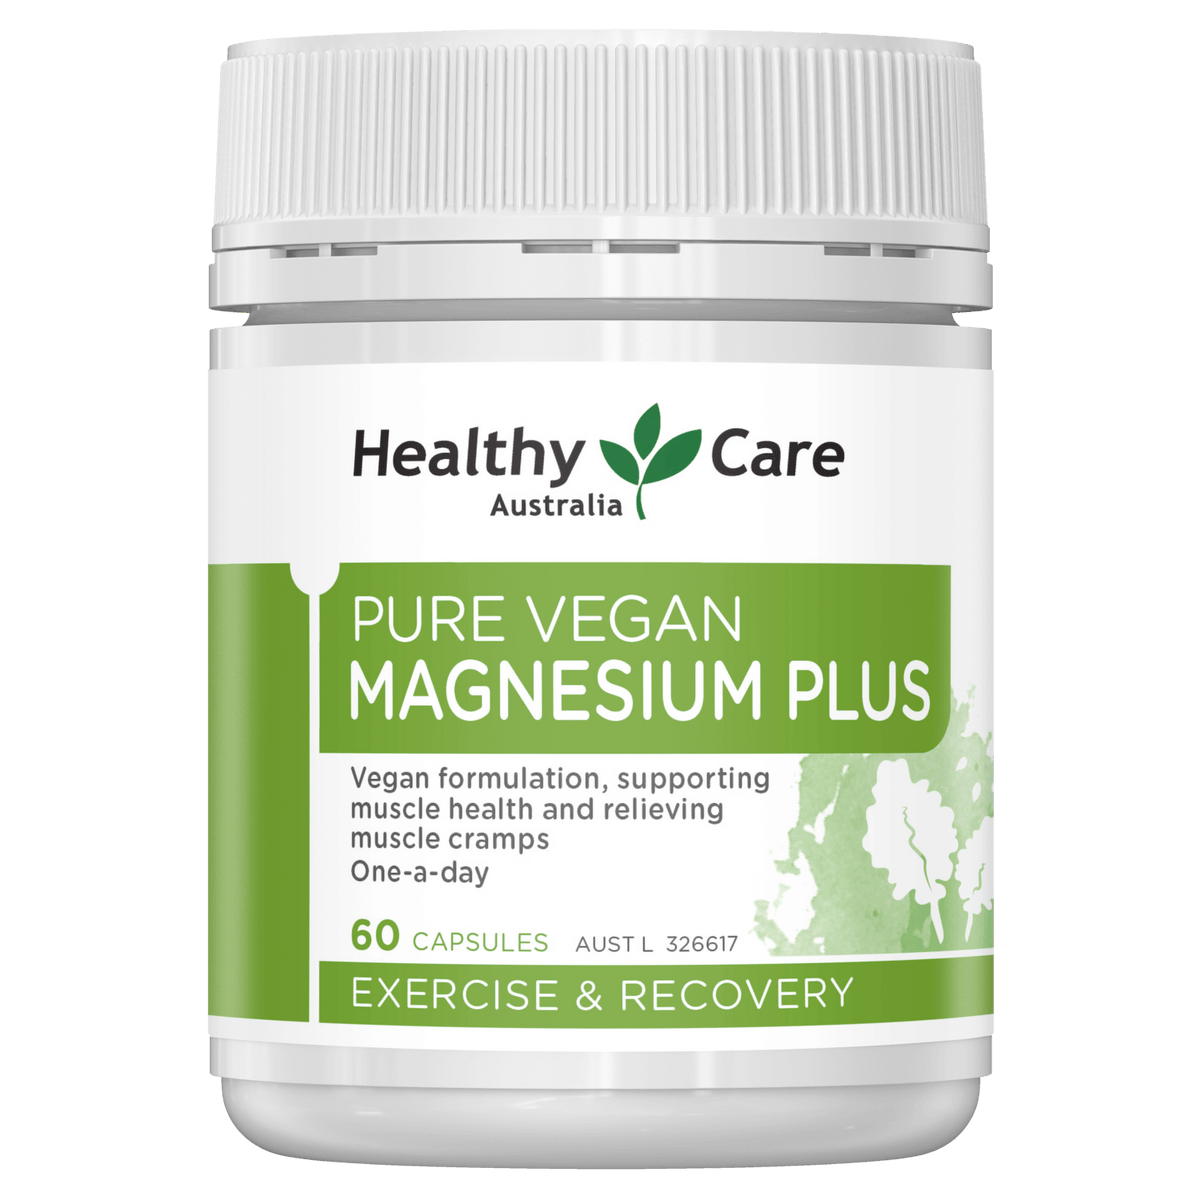 Healthy Care Pure Vegan Magnesium Plus 60 Capsules